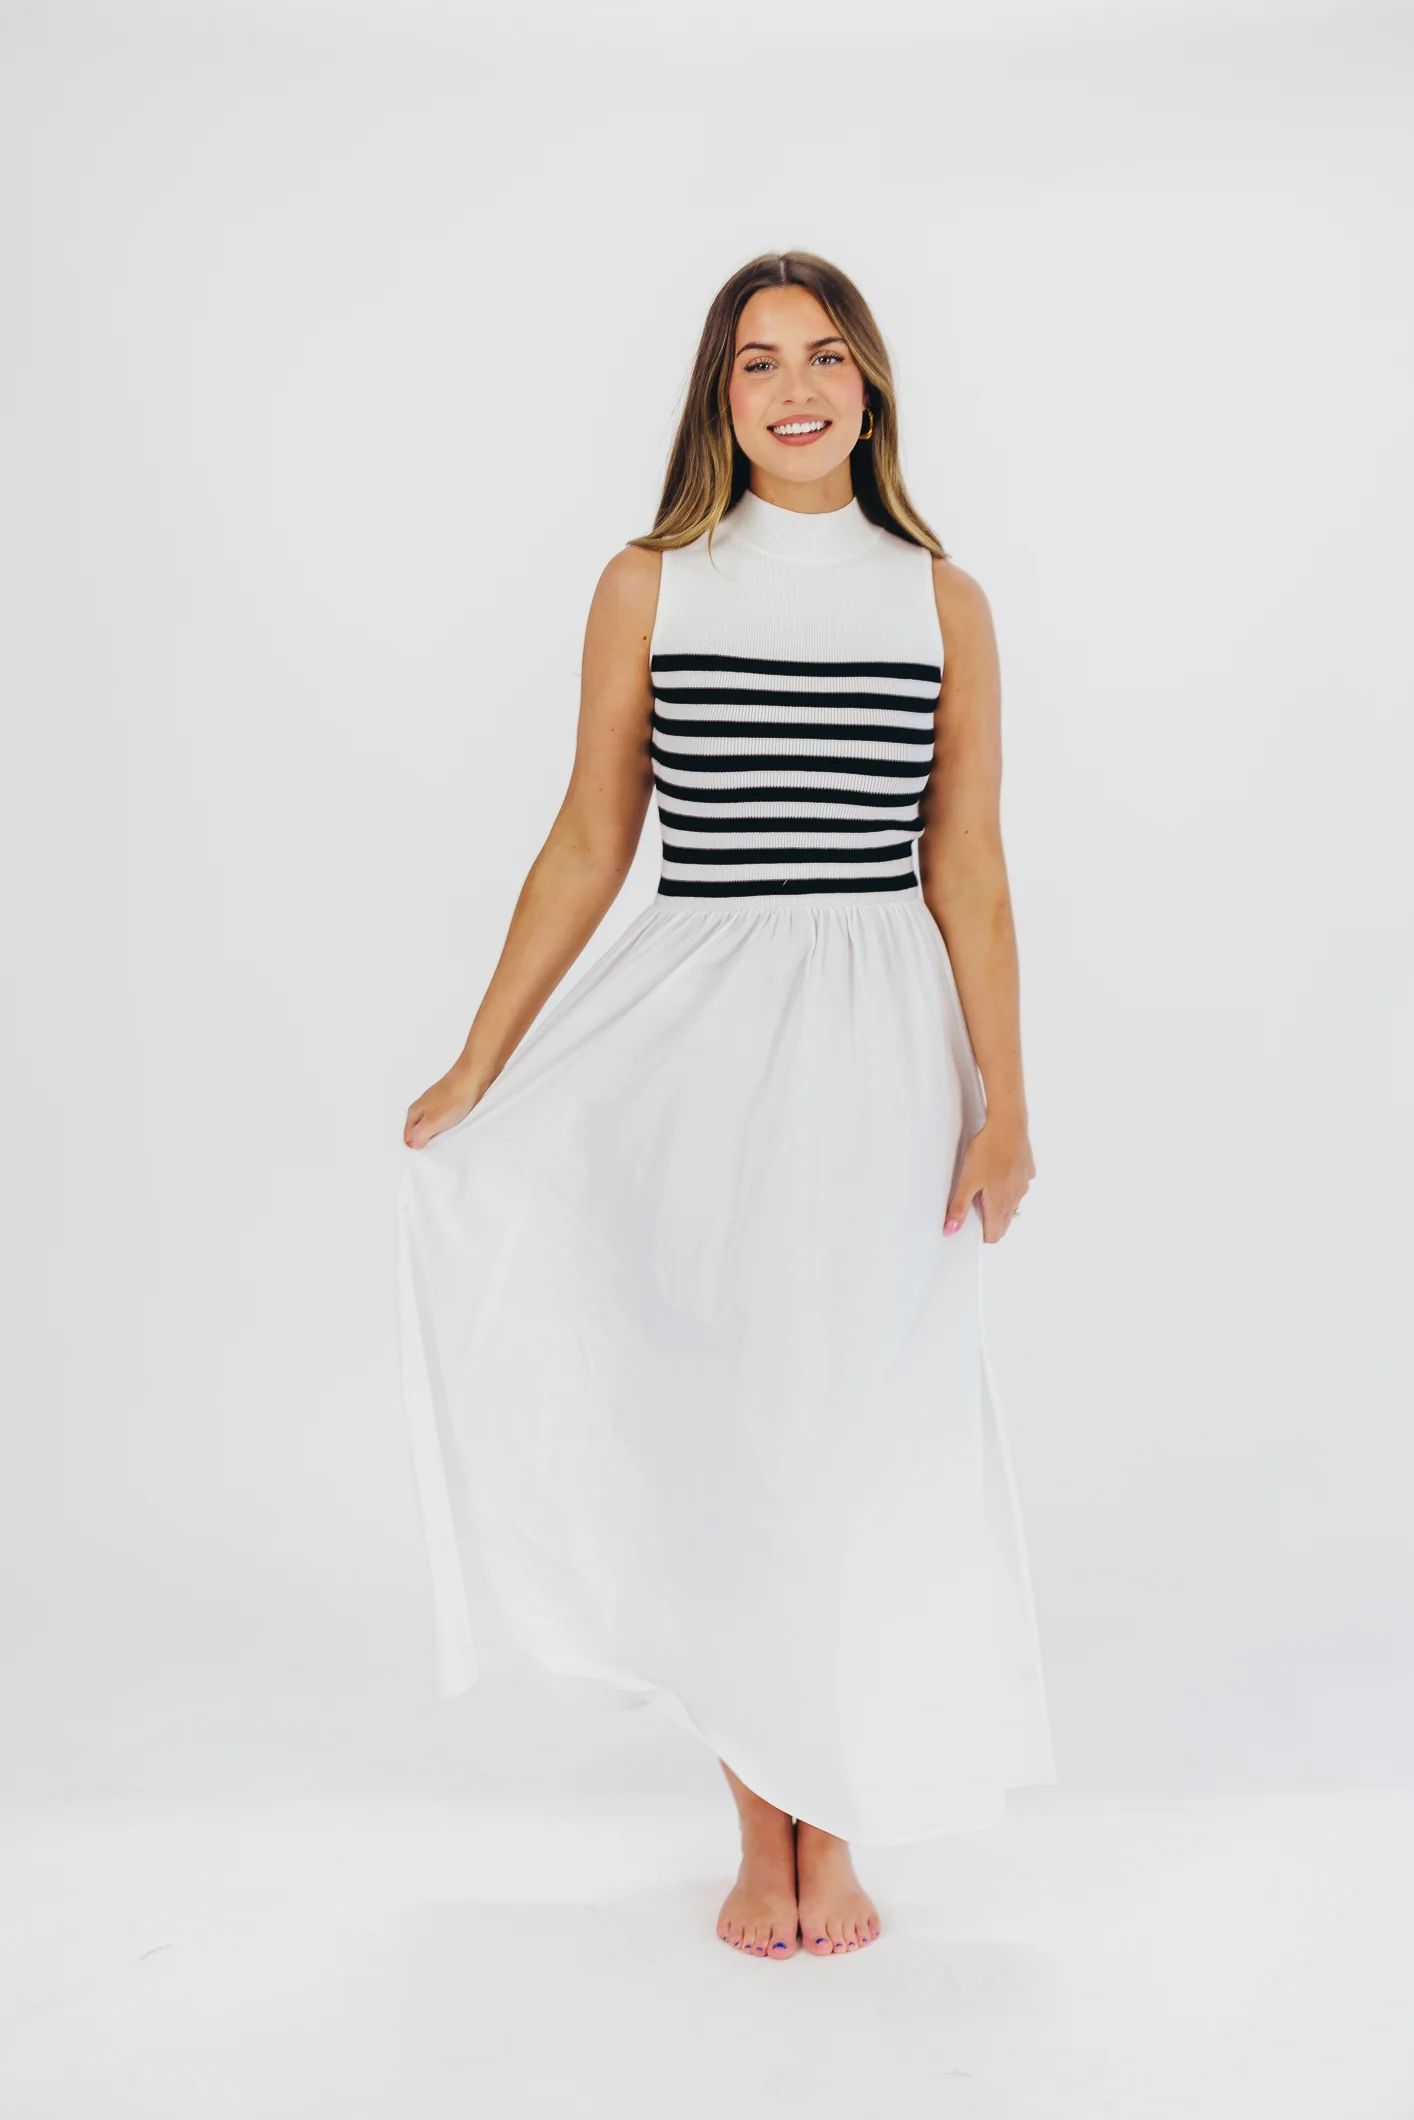 Tia Knit Maxi Dress in White Stripe | Worth Collective